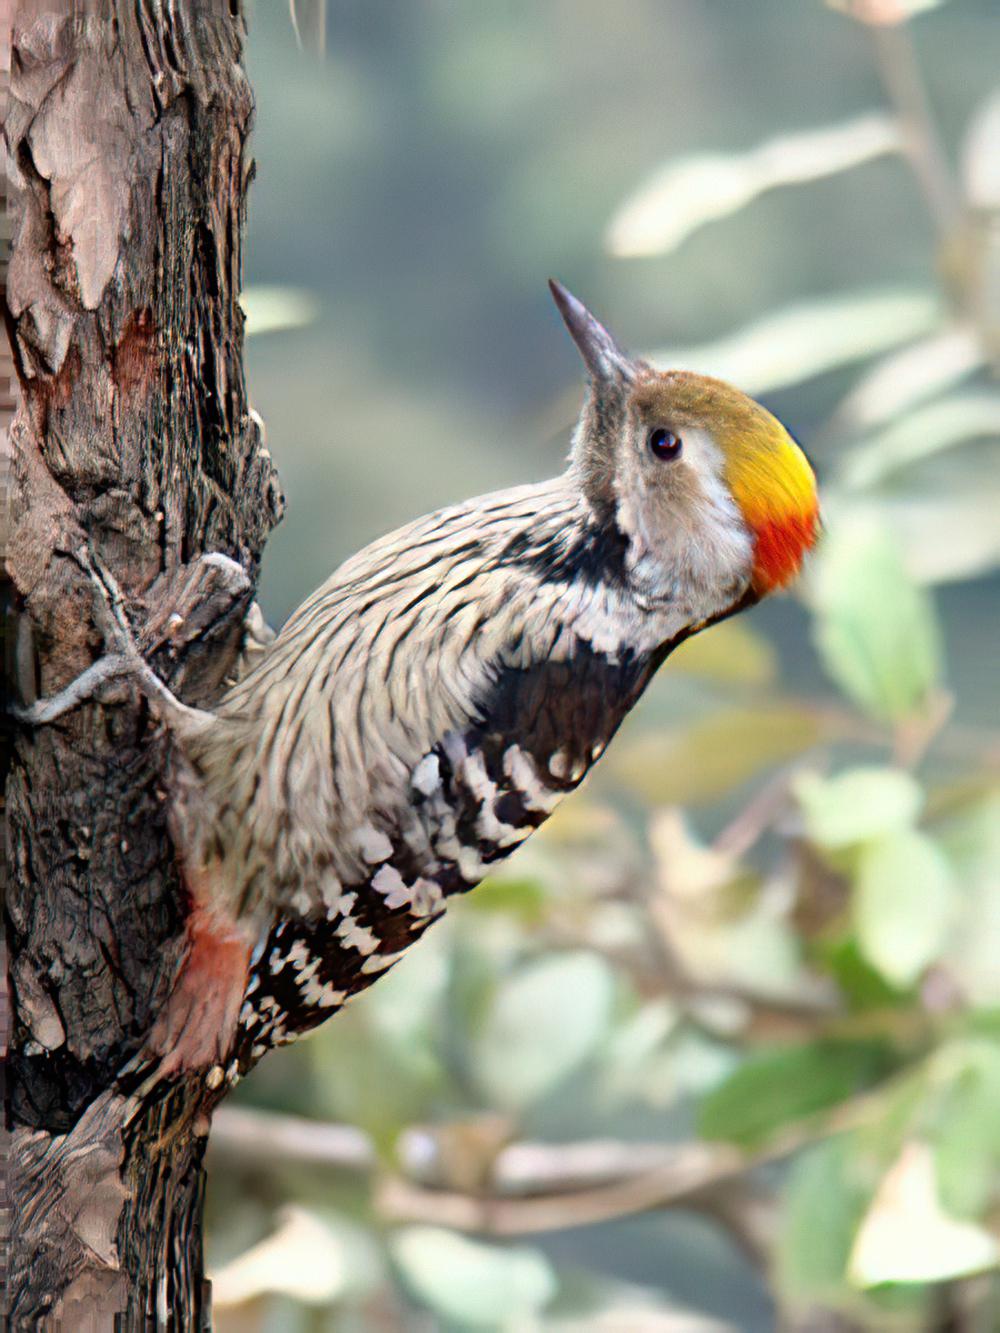 褐额啄木鸟 / Brown-fronted Woodpecker / Dendrocoptes auriceps